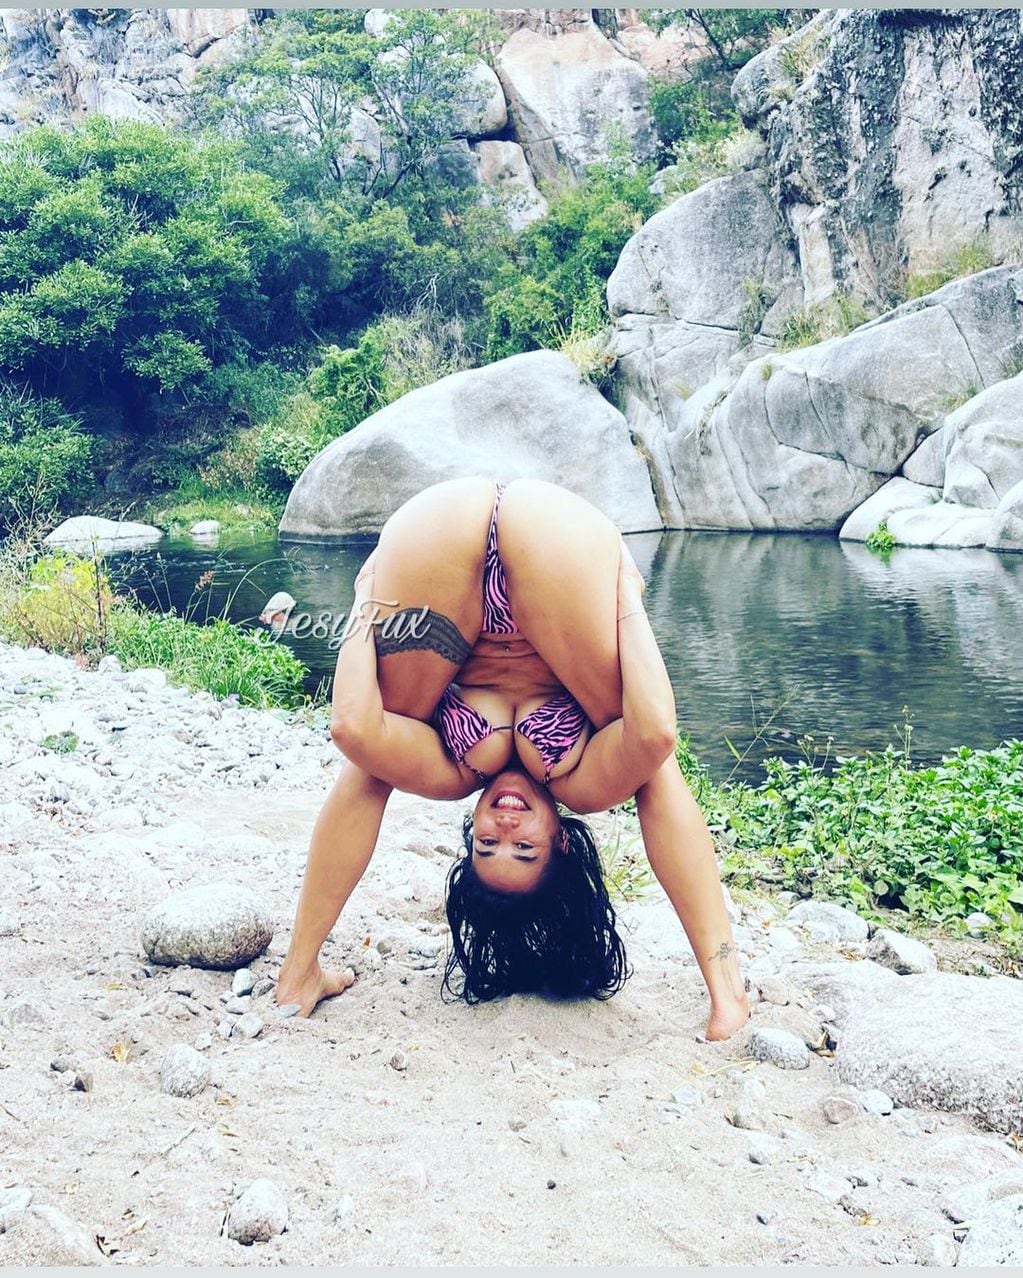 La modelo y actriz porno mostró toda su retaguardia en Instagram